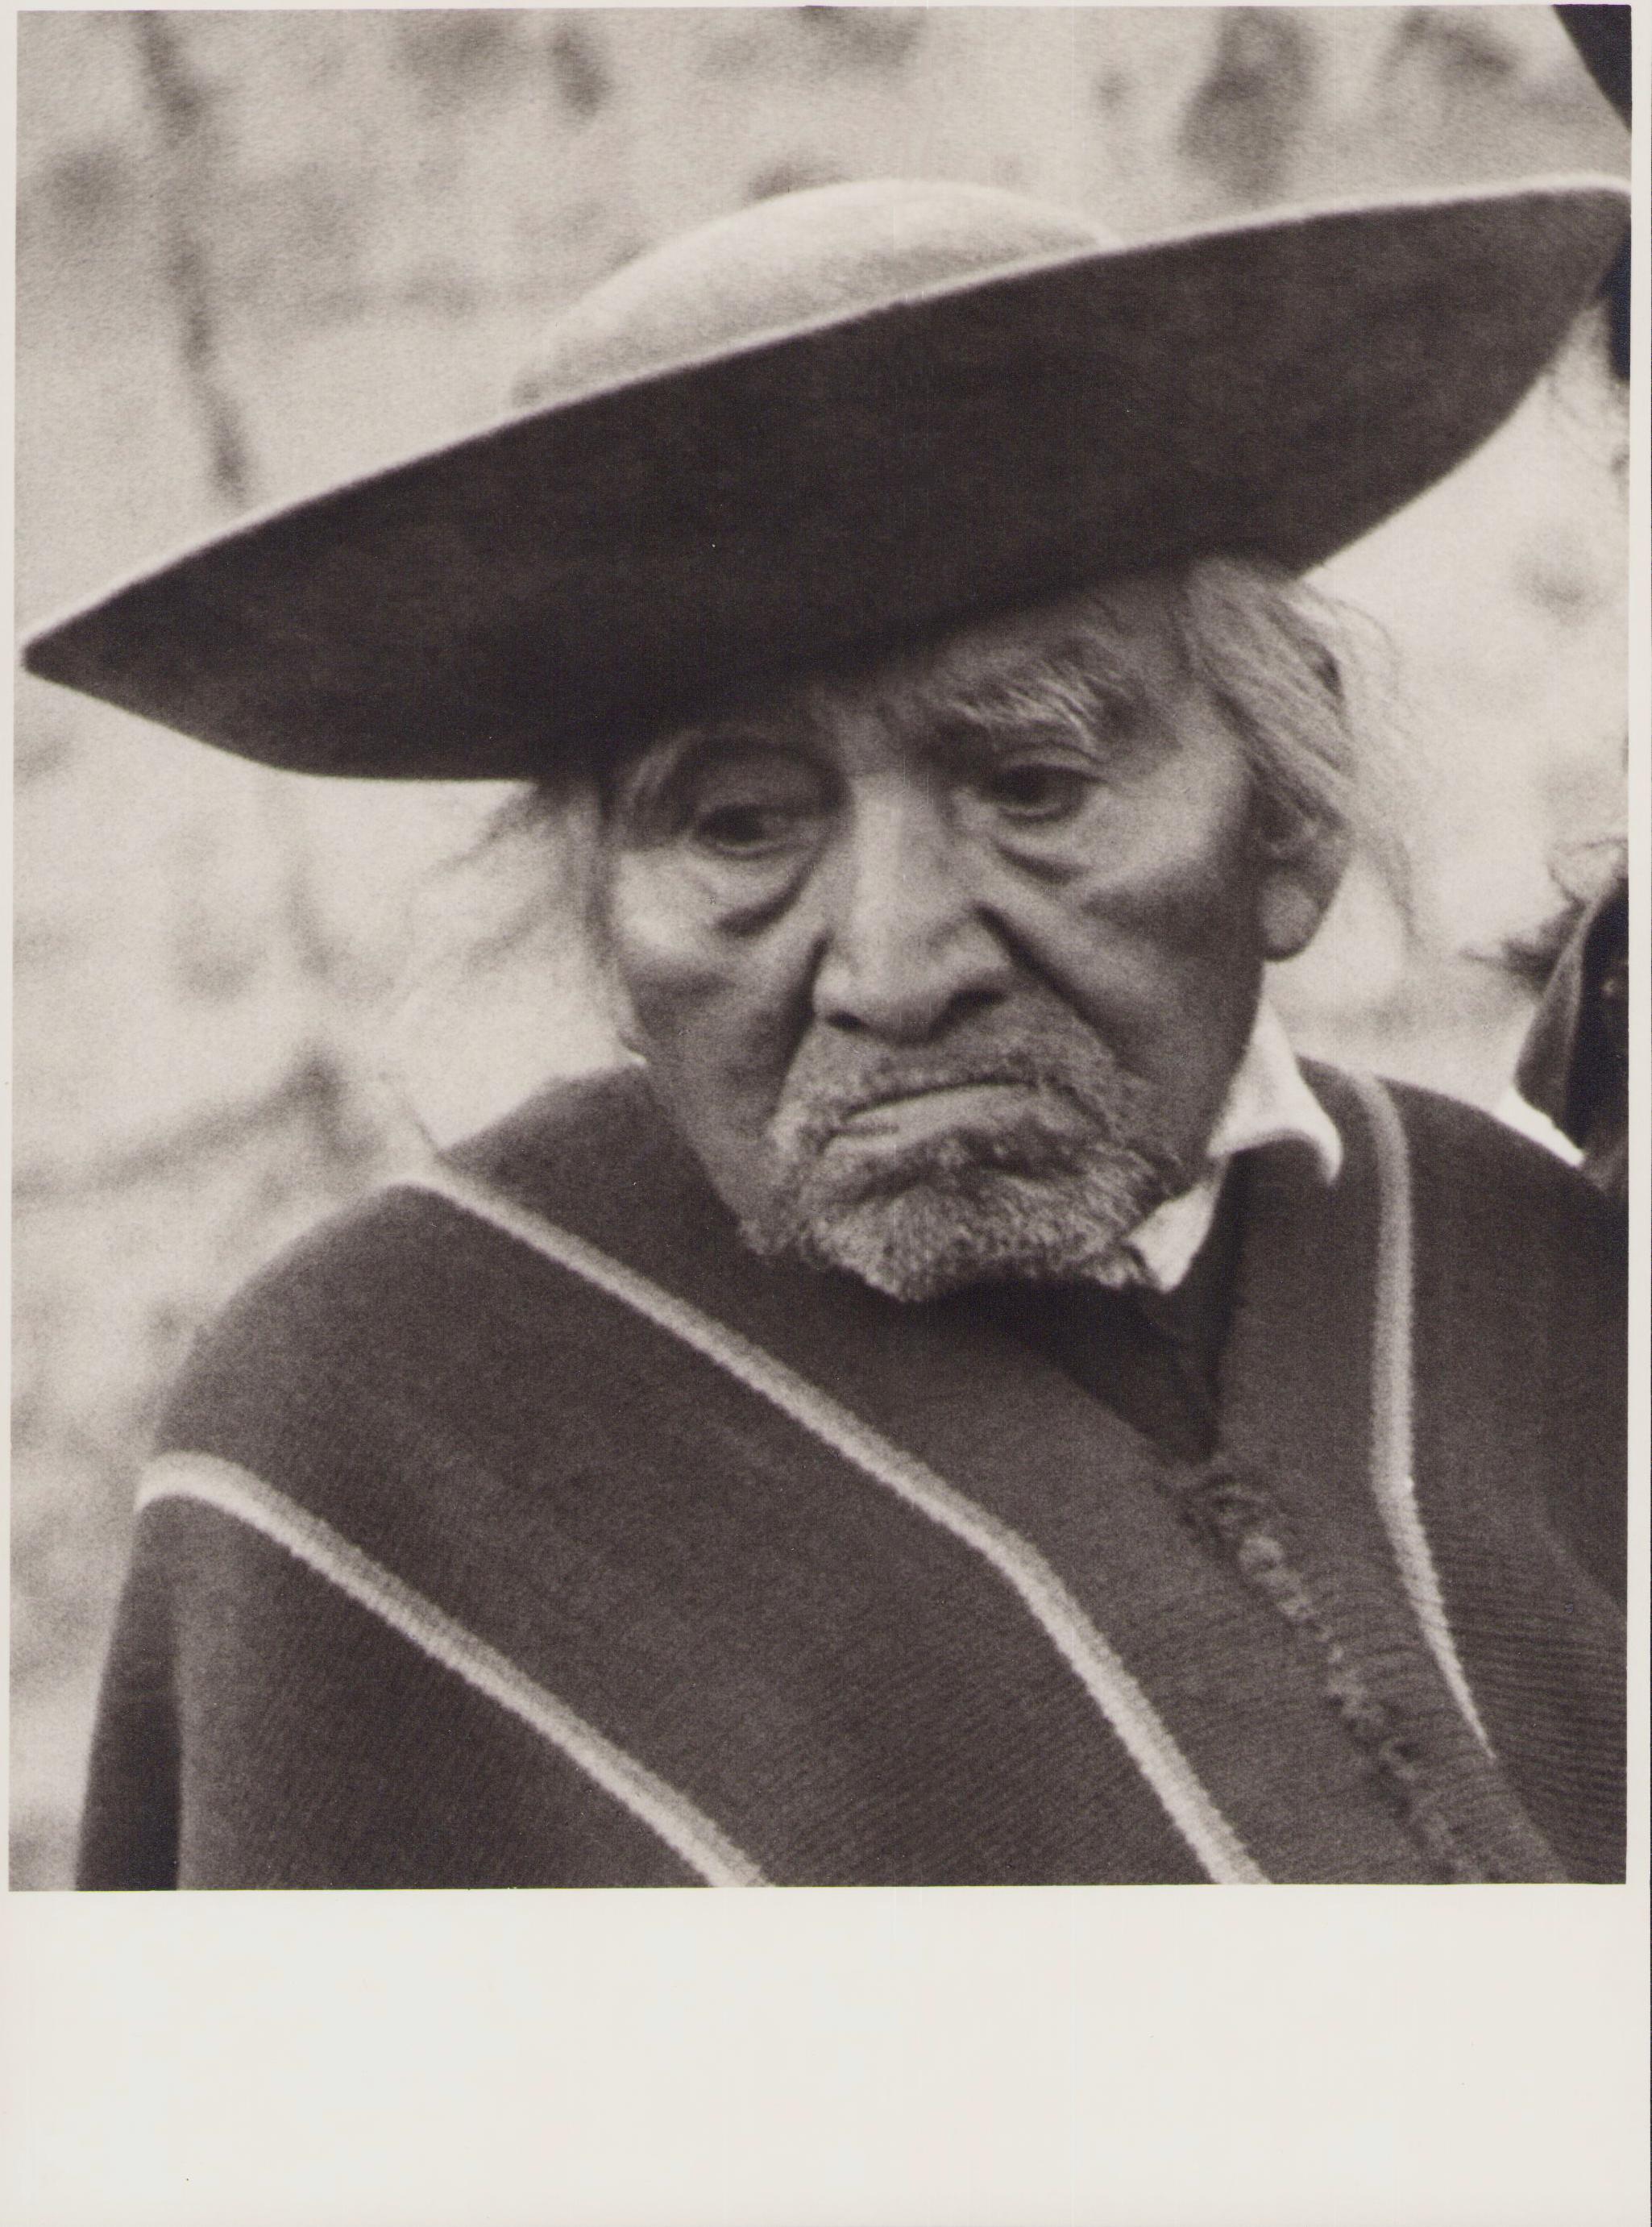 Hanna Seidel Portrait Photograph - Ecuador, Man, Indigenous, Black and White Photography, 1960s, 23, 5 x 17, 5 cm